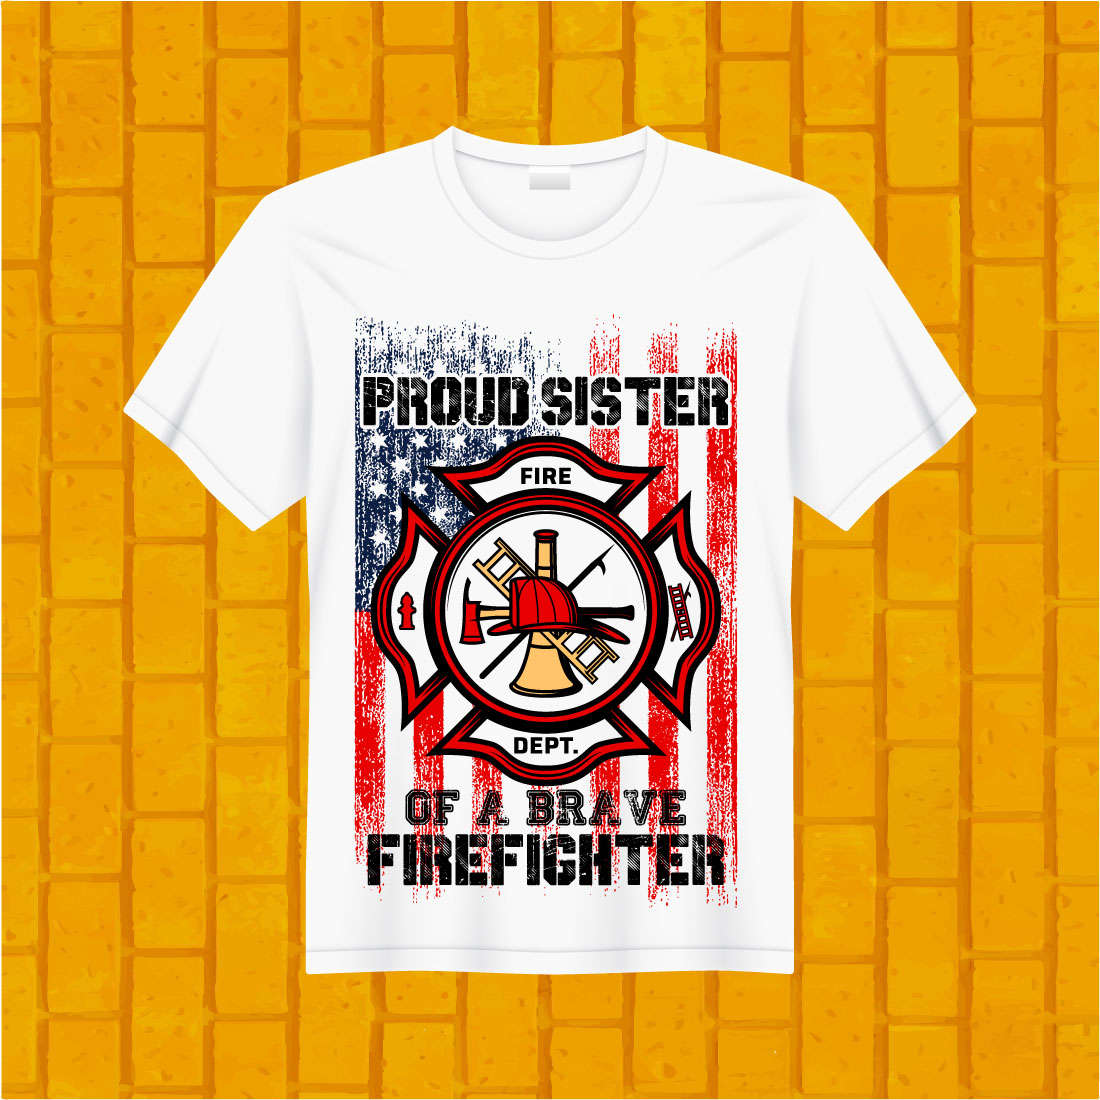 T-shirt Firefighter Design Bundle cover image.